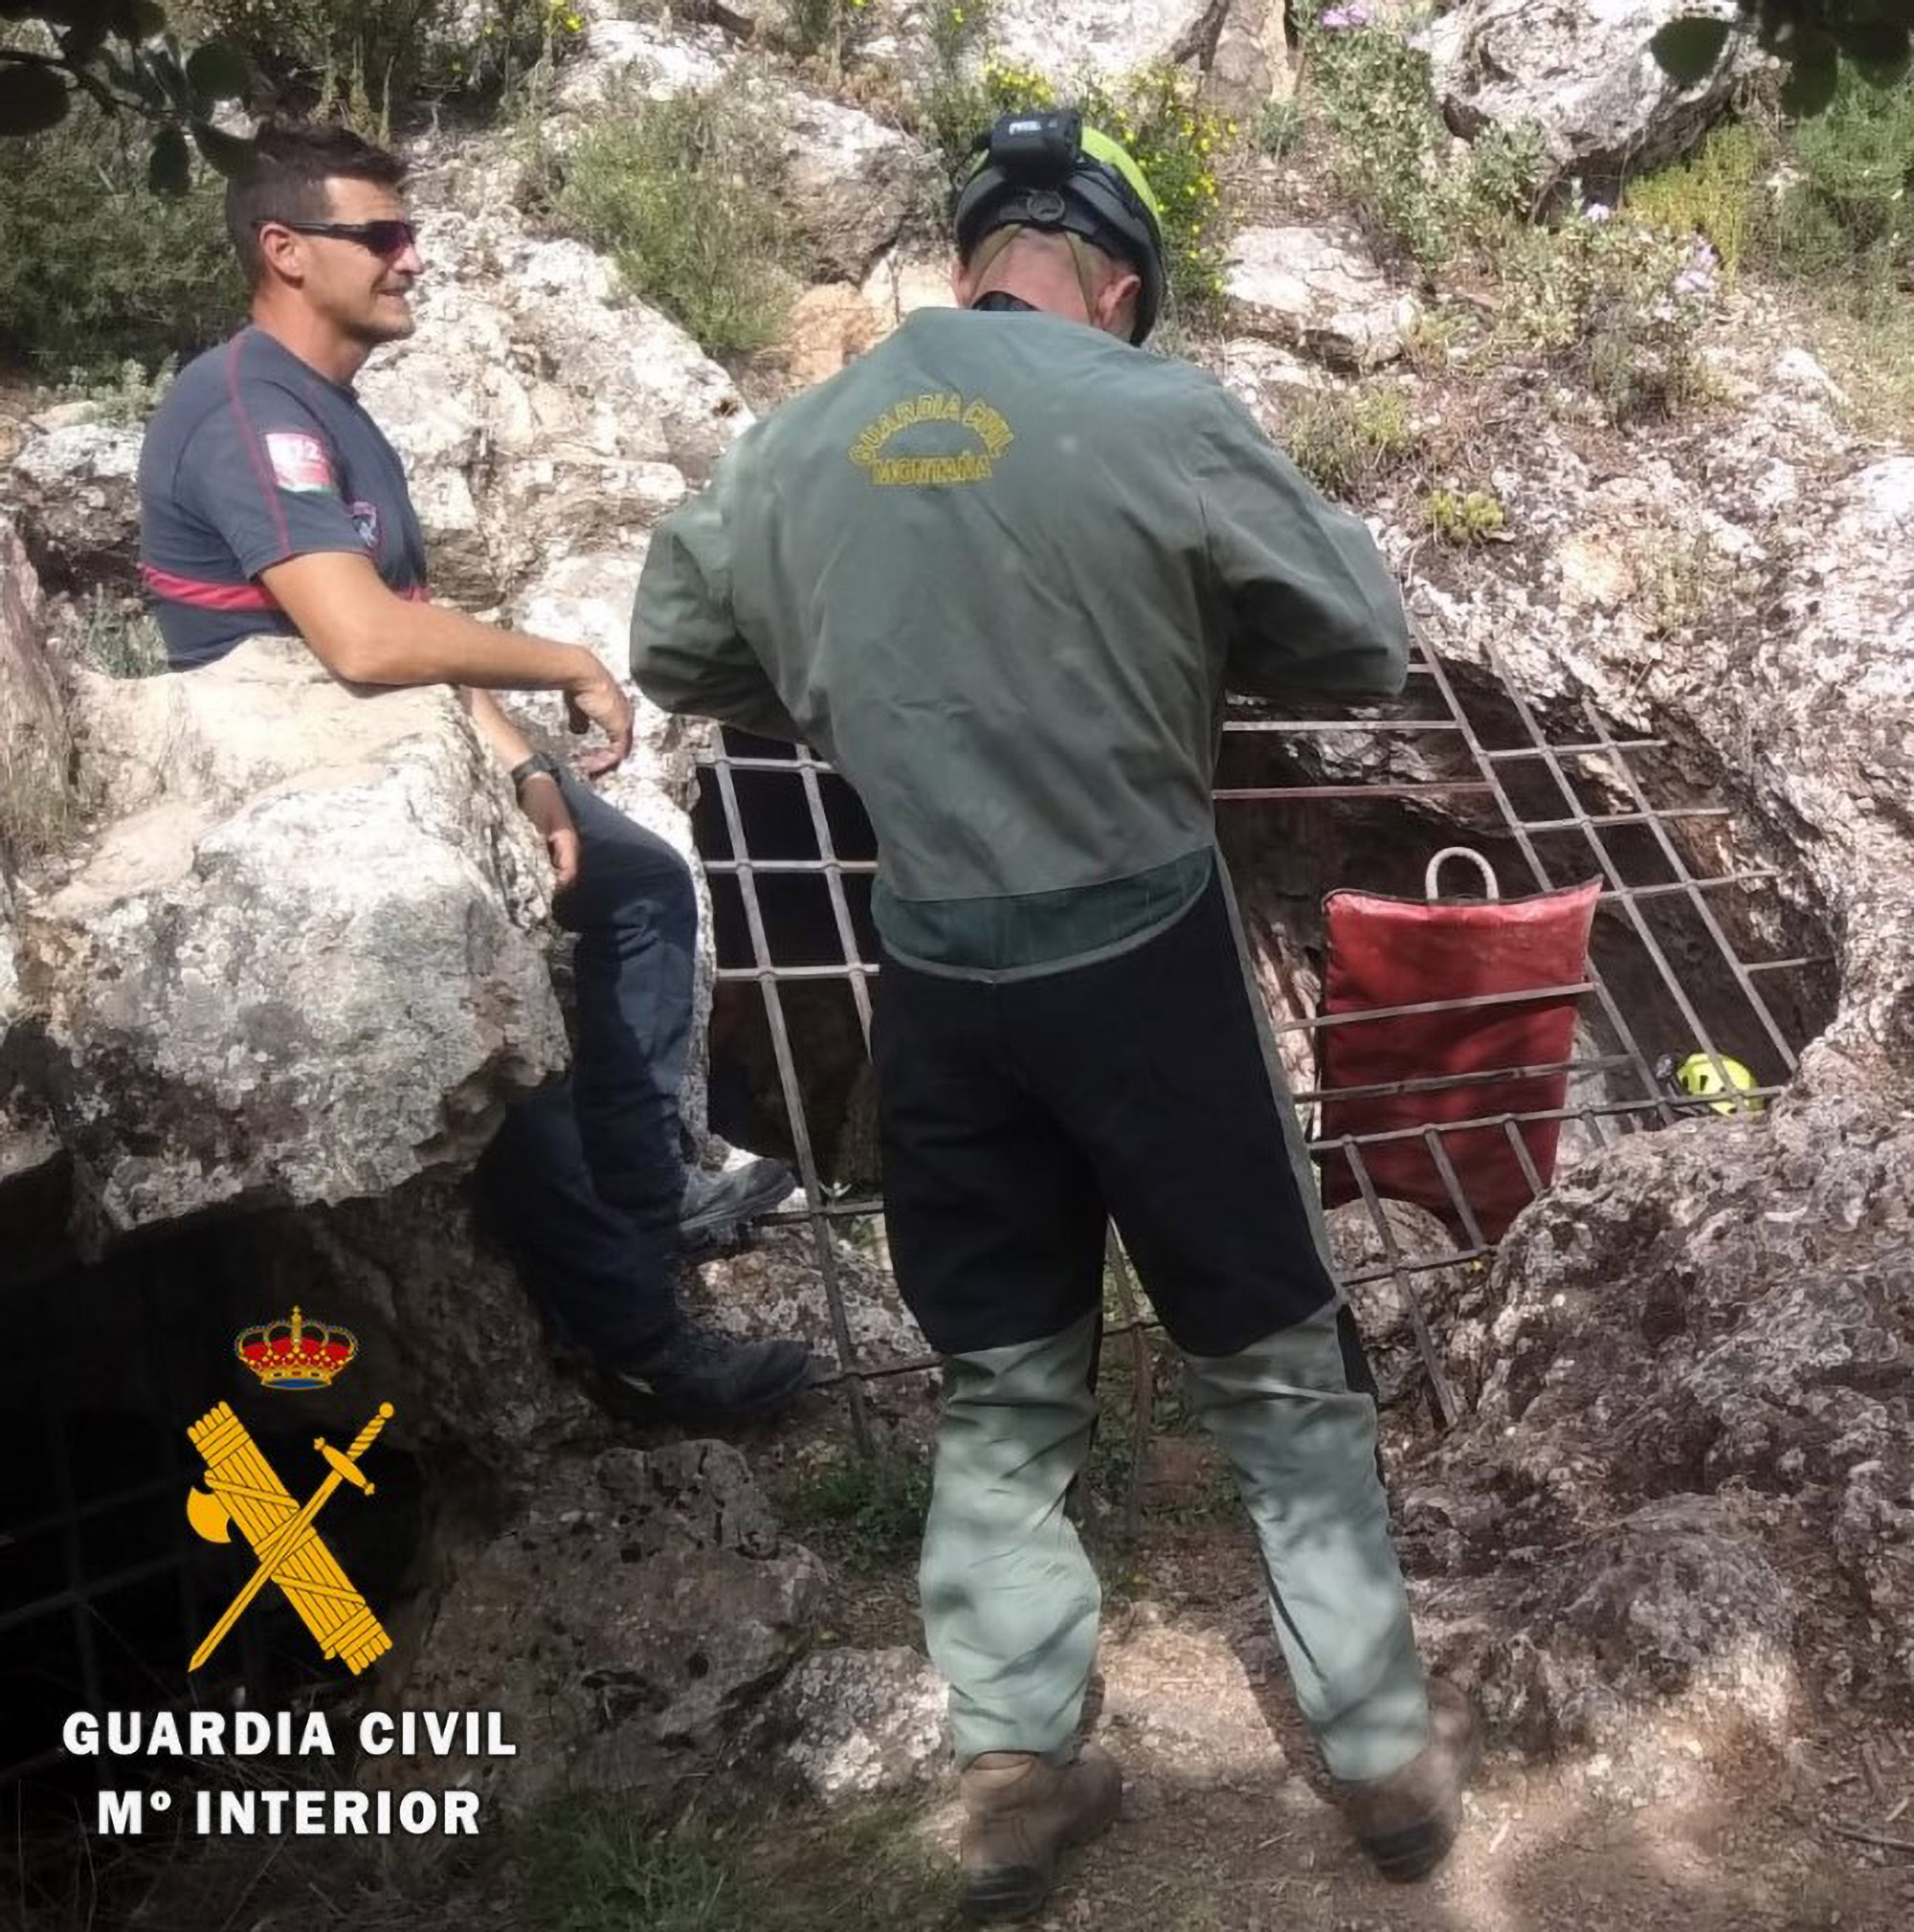 La cueva atrapada fue rescatada por un equipo de rescate en España